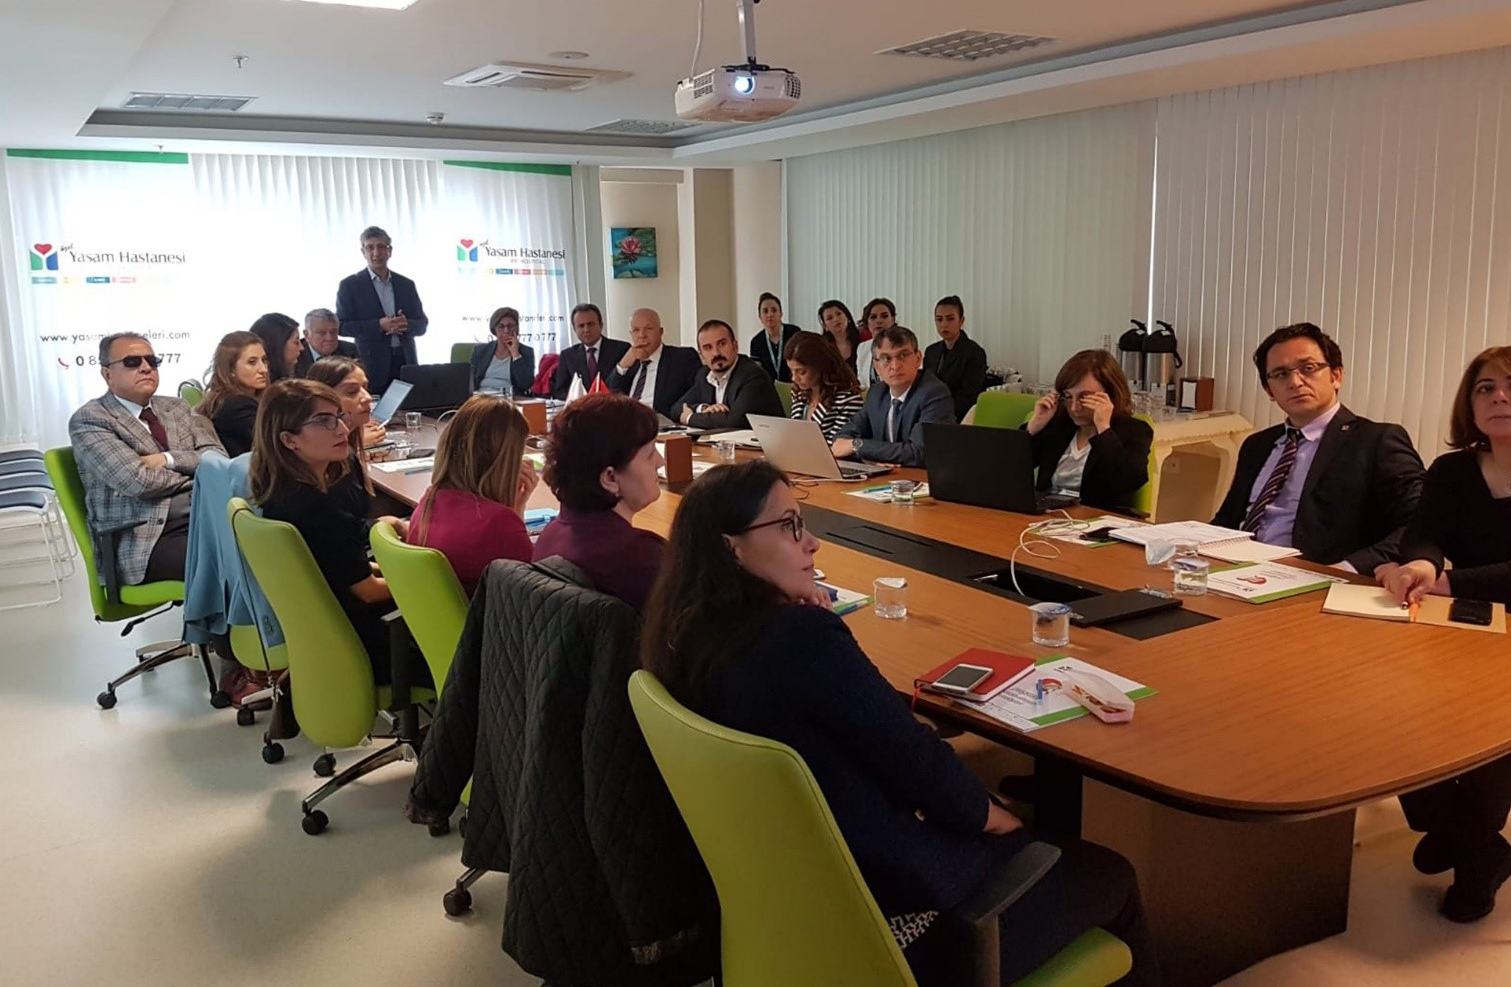 2b - Antalya ANSİAD toplantısı ve Yaşam Hastaneleri Ziyareti 9-10 Nisan 2019